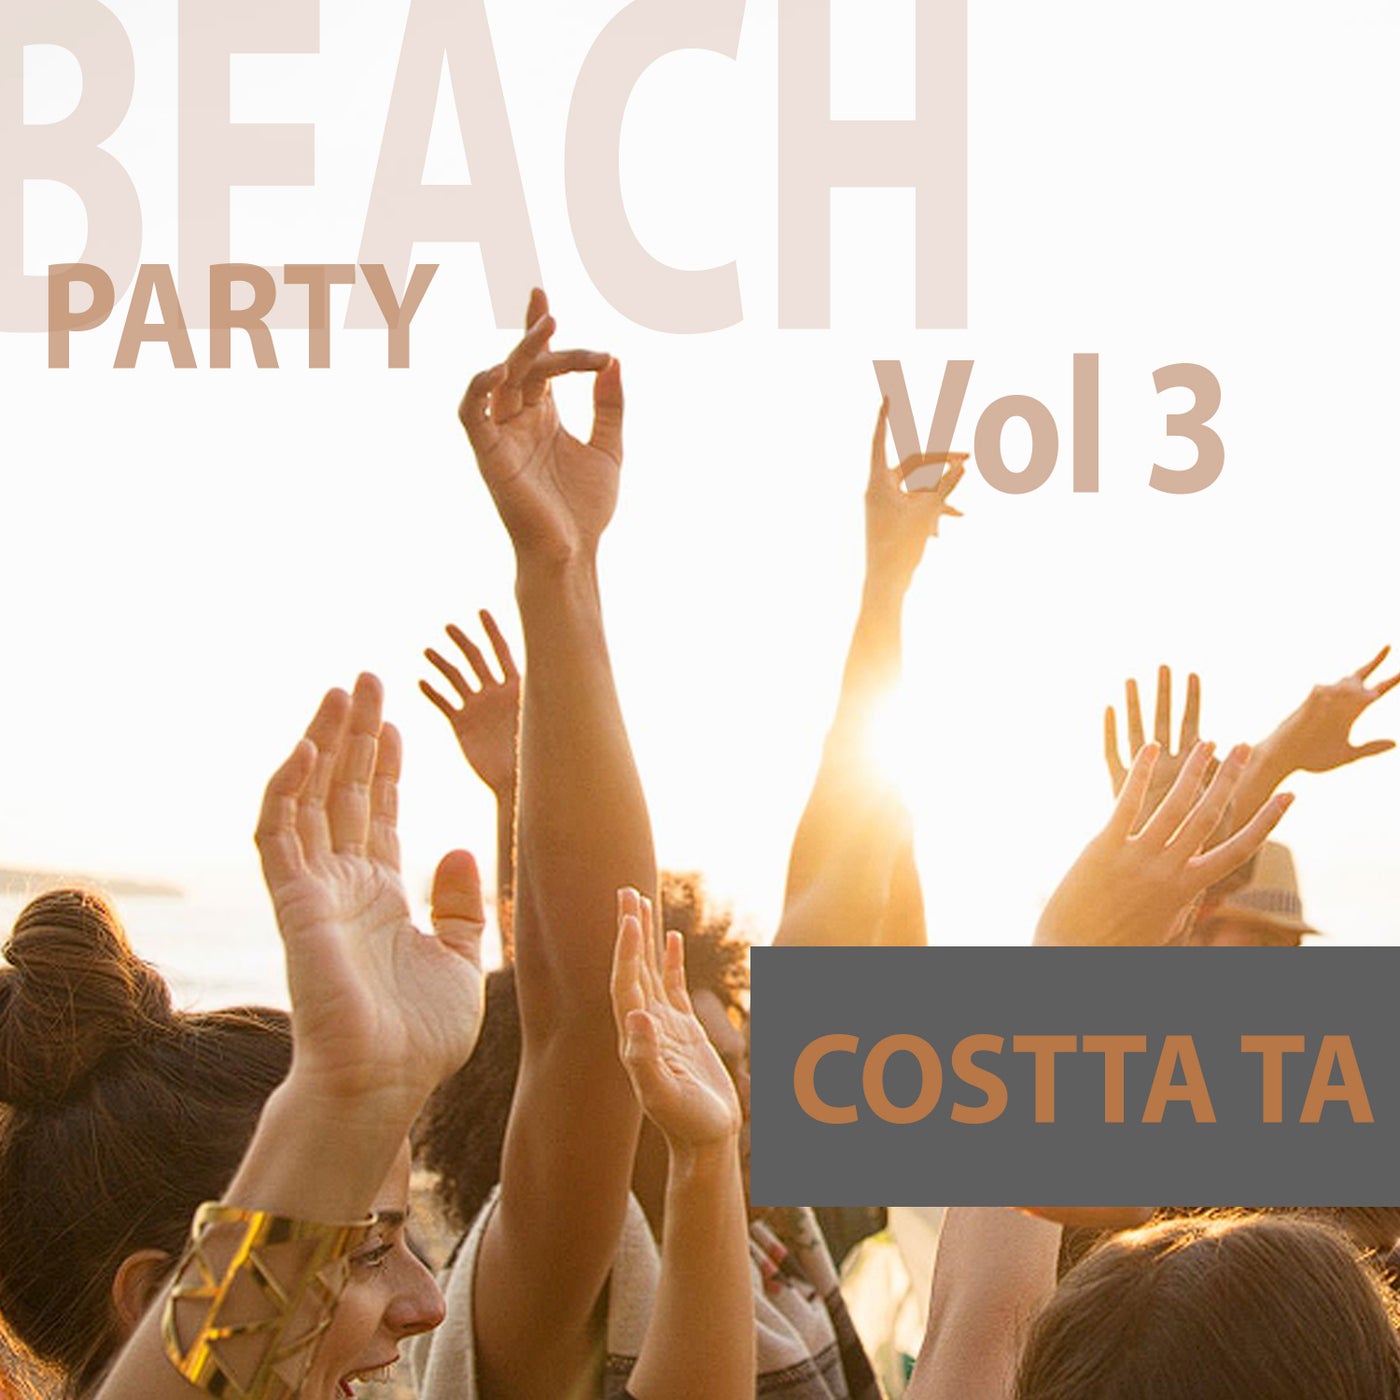 Beach Party, Vol. 3